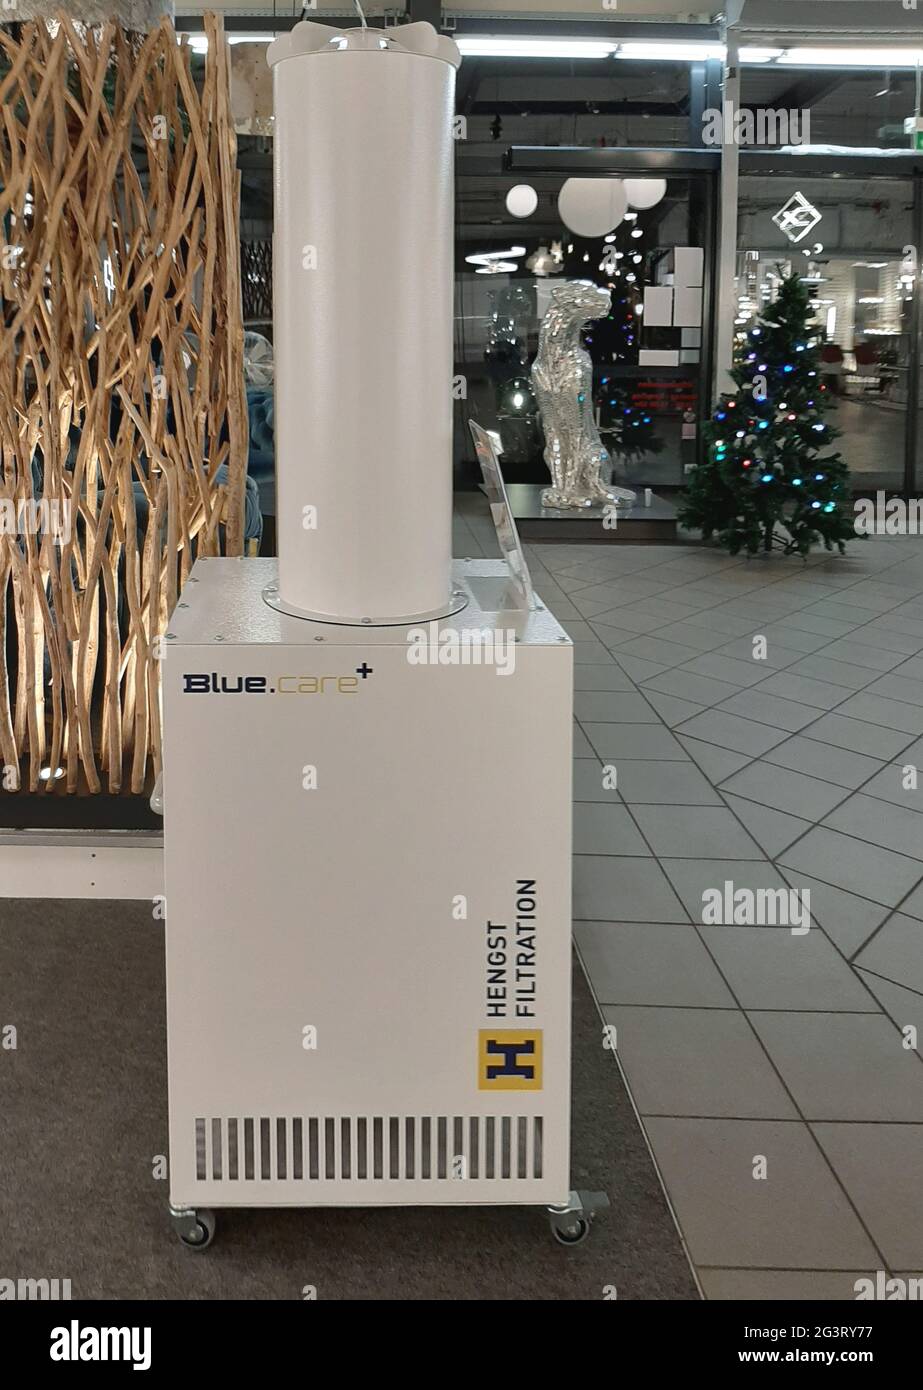 Filtre à air mobile technique dans un magasin, mesure de protection corona, Allemagne Banque D'Images